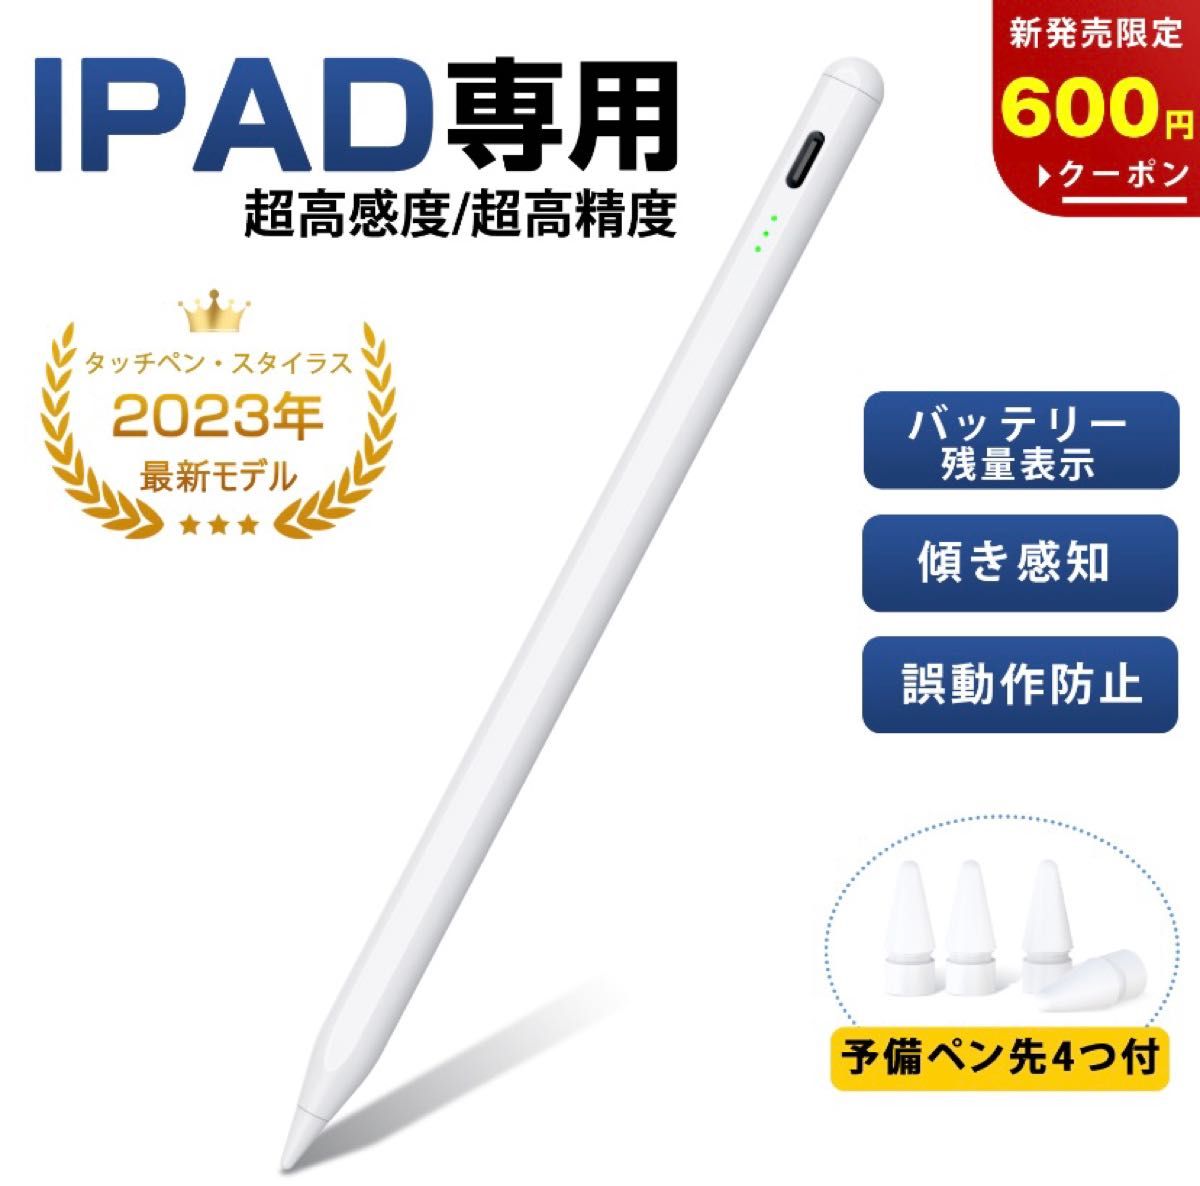 タッチペン iPad ペンシル スタイラスペン 極細ペン先 高感度 高精度 傾き検知 磁気吸着 Type-C急速充電 